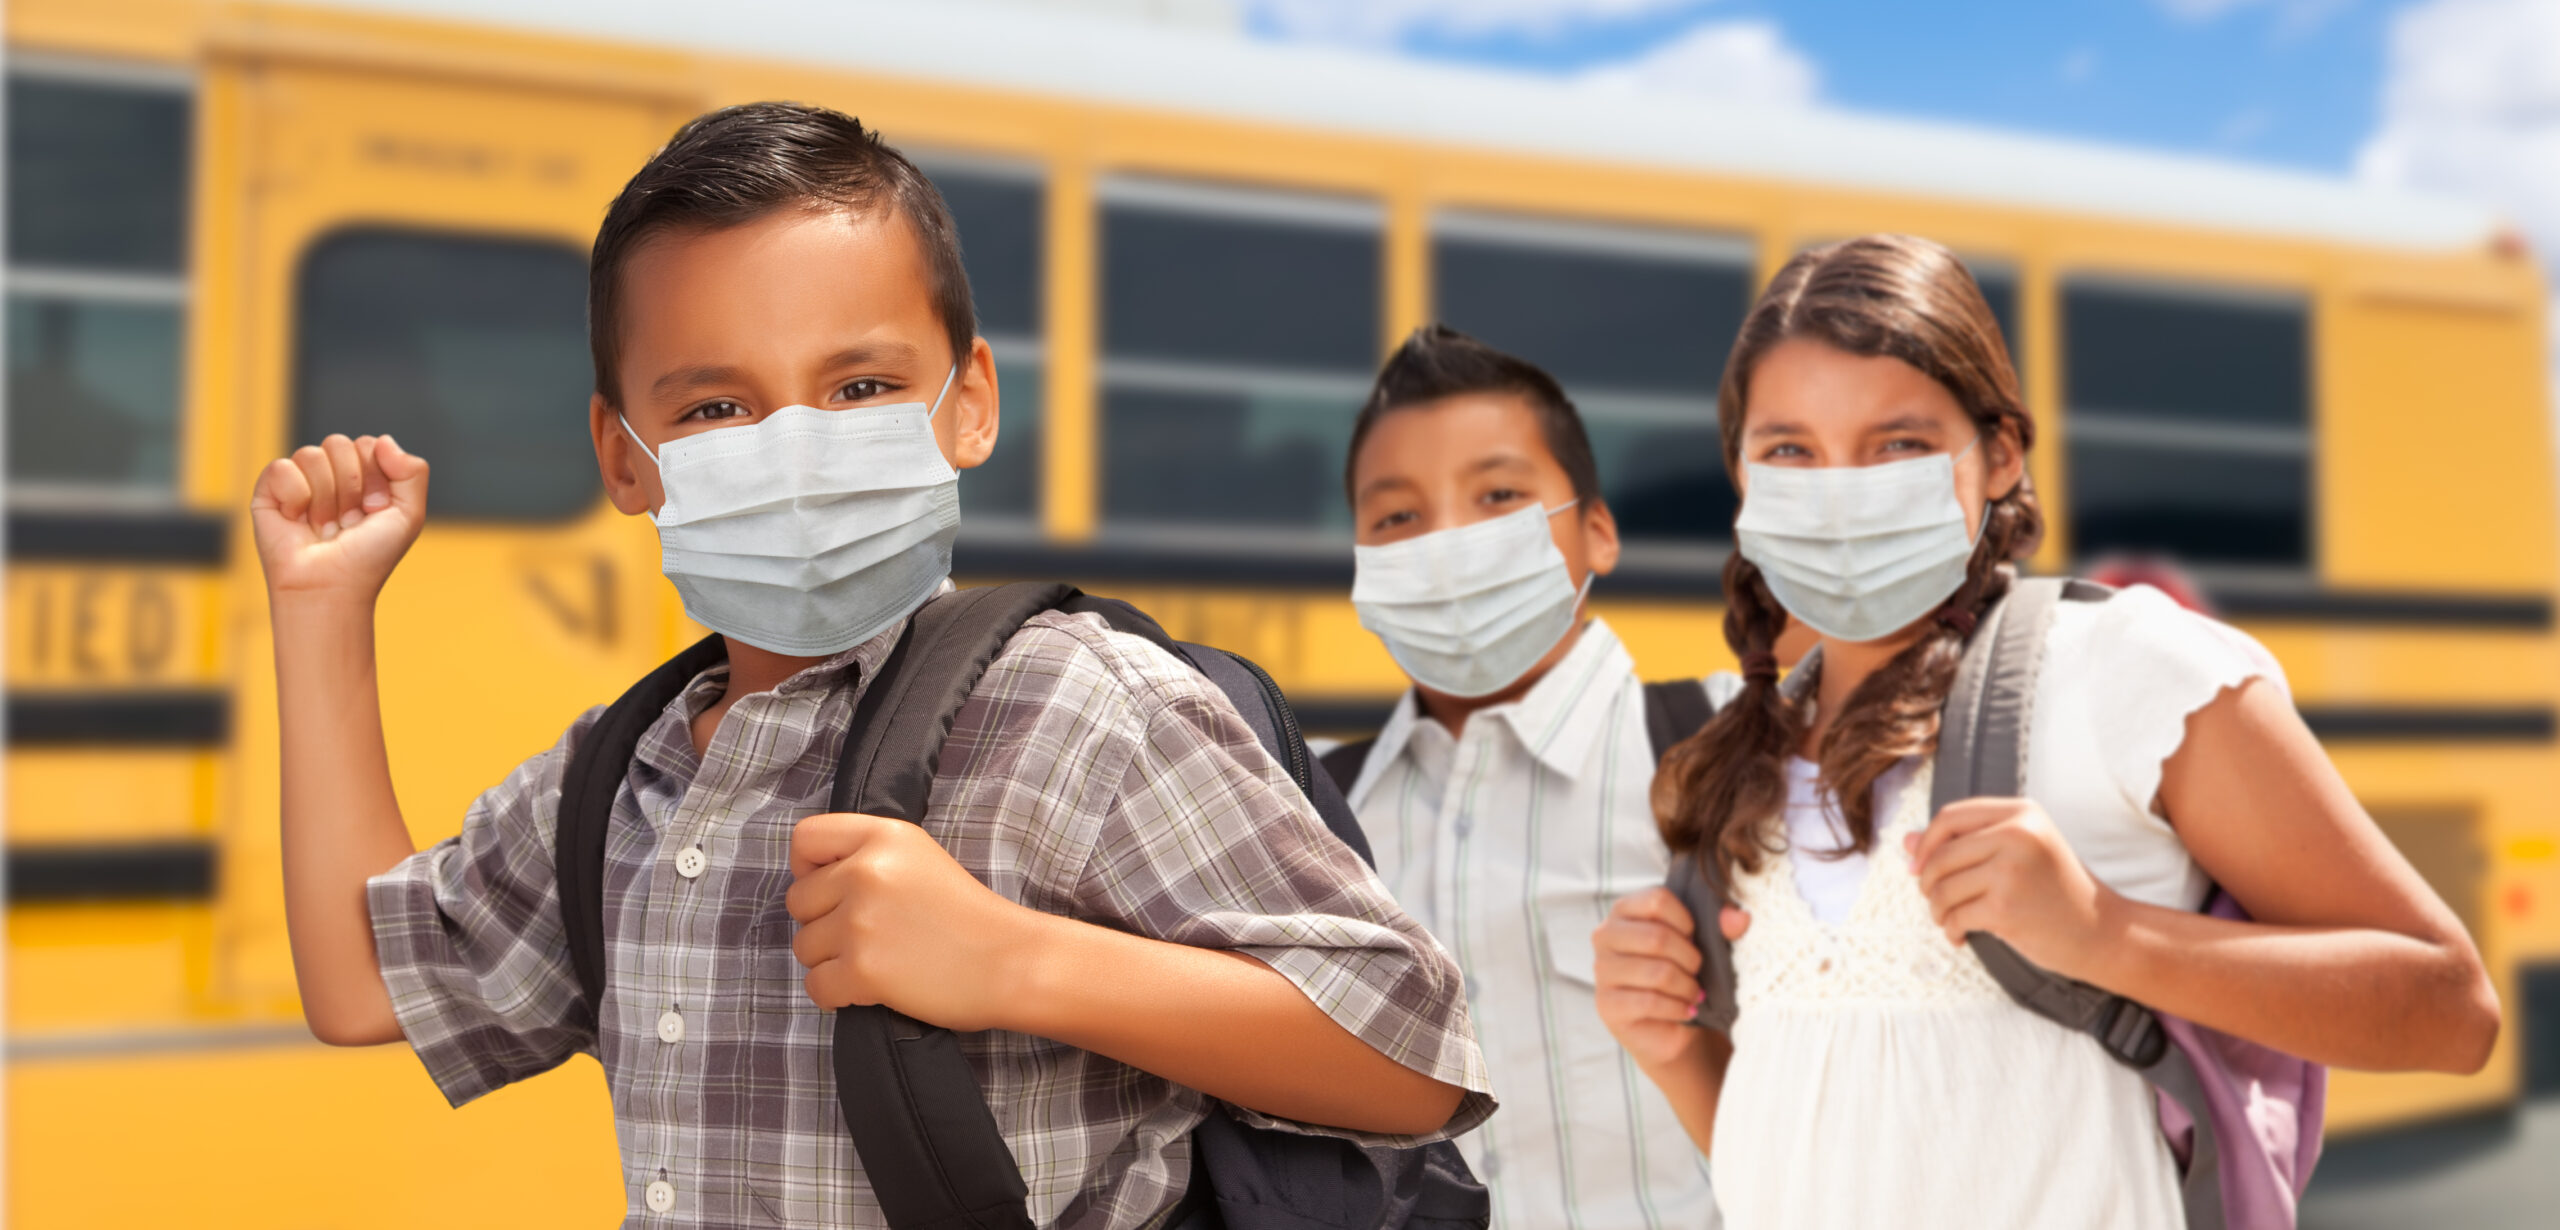 kids in masks boarding a school bus